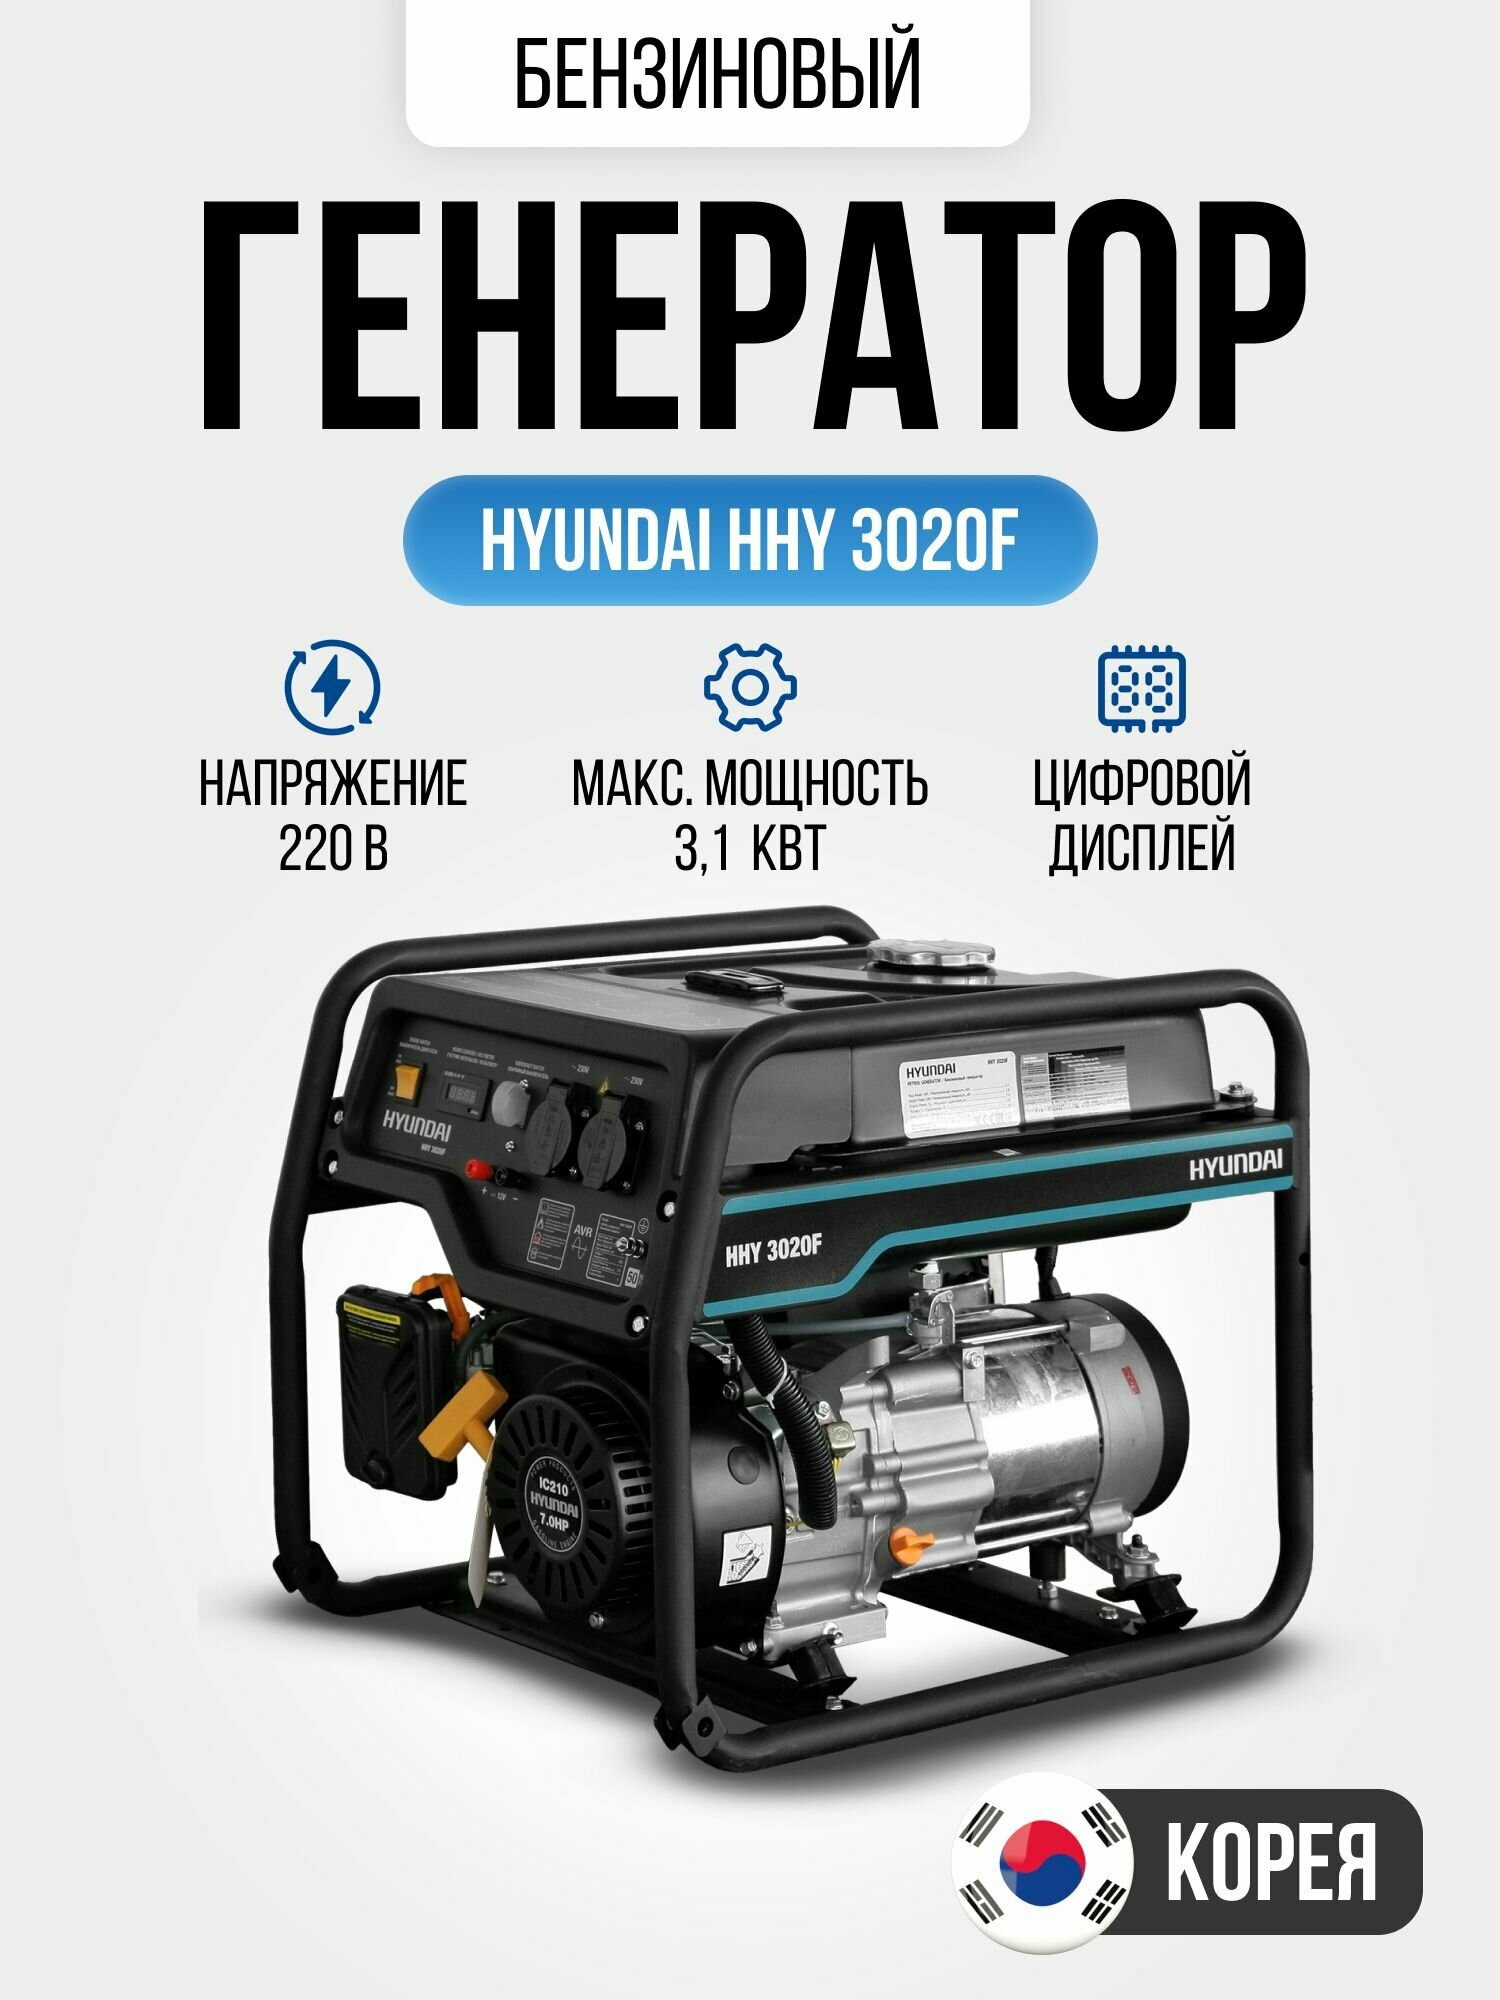 Генератор бензиновый Hyundai HHY 3020F 3.1 кВт с ручным запуском двигателя и автоматическим регулятором напряжения, 44кг